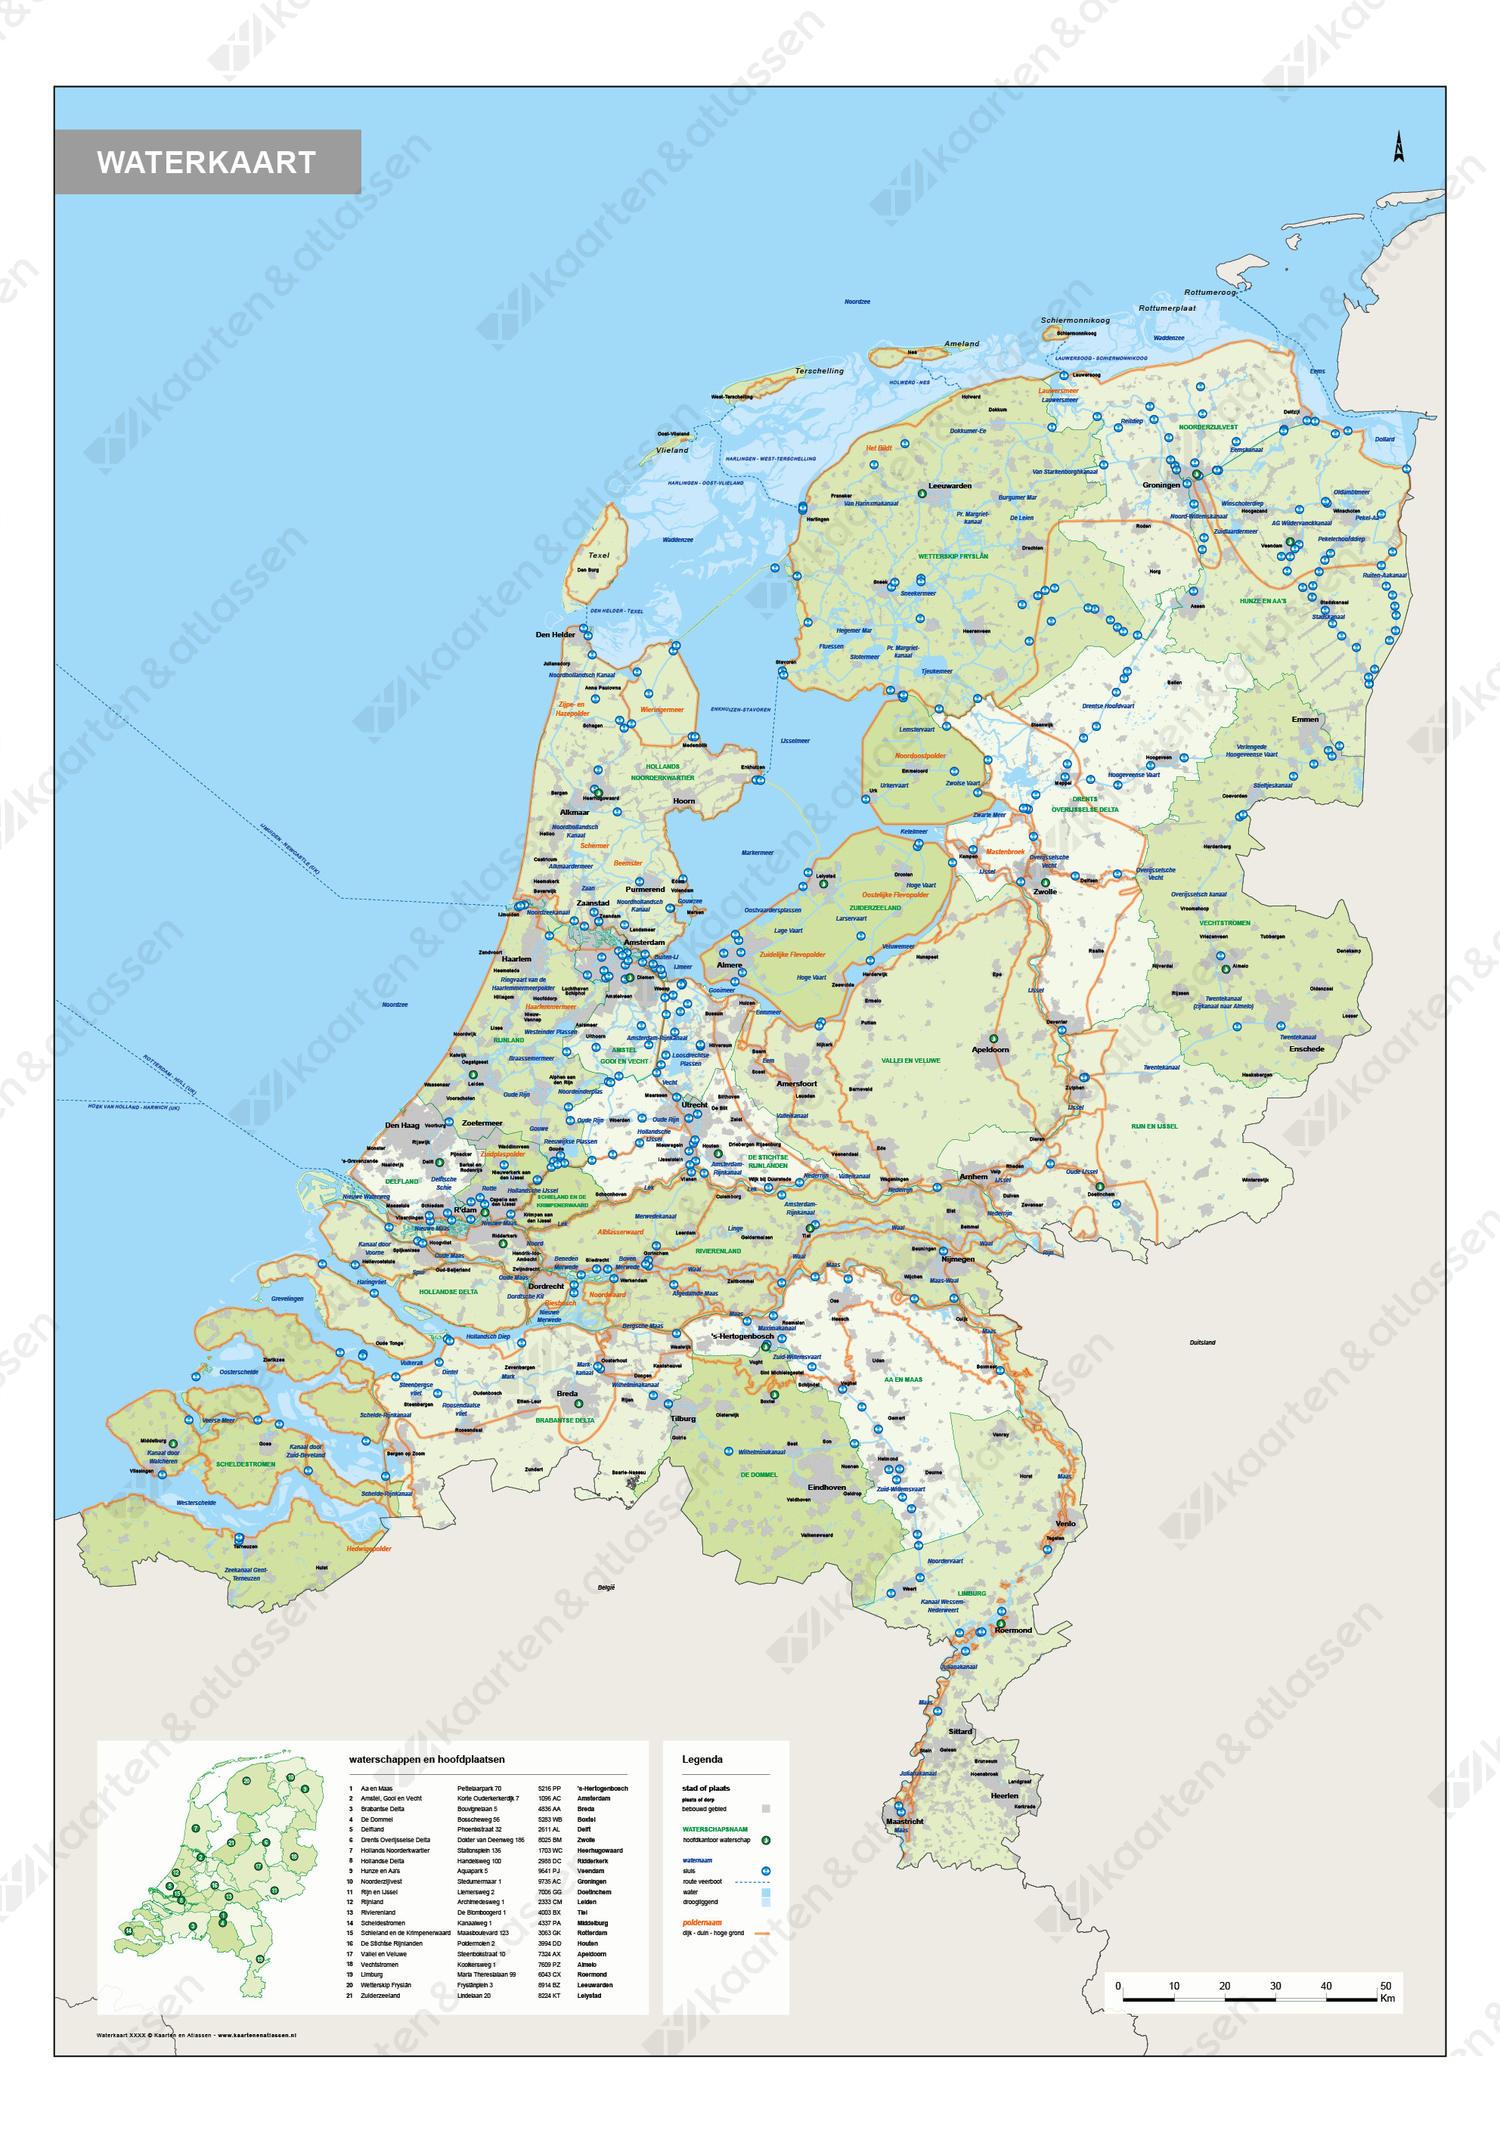 Waterkaart van Nederland